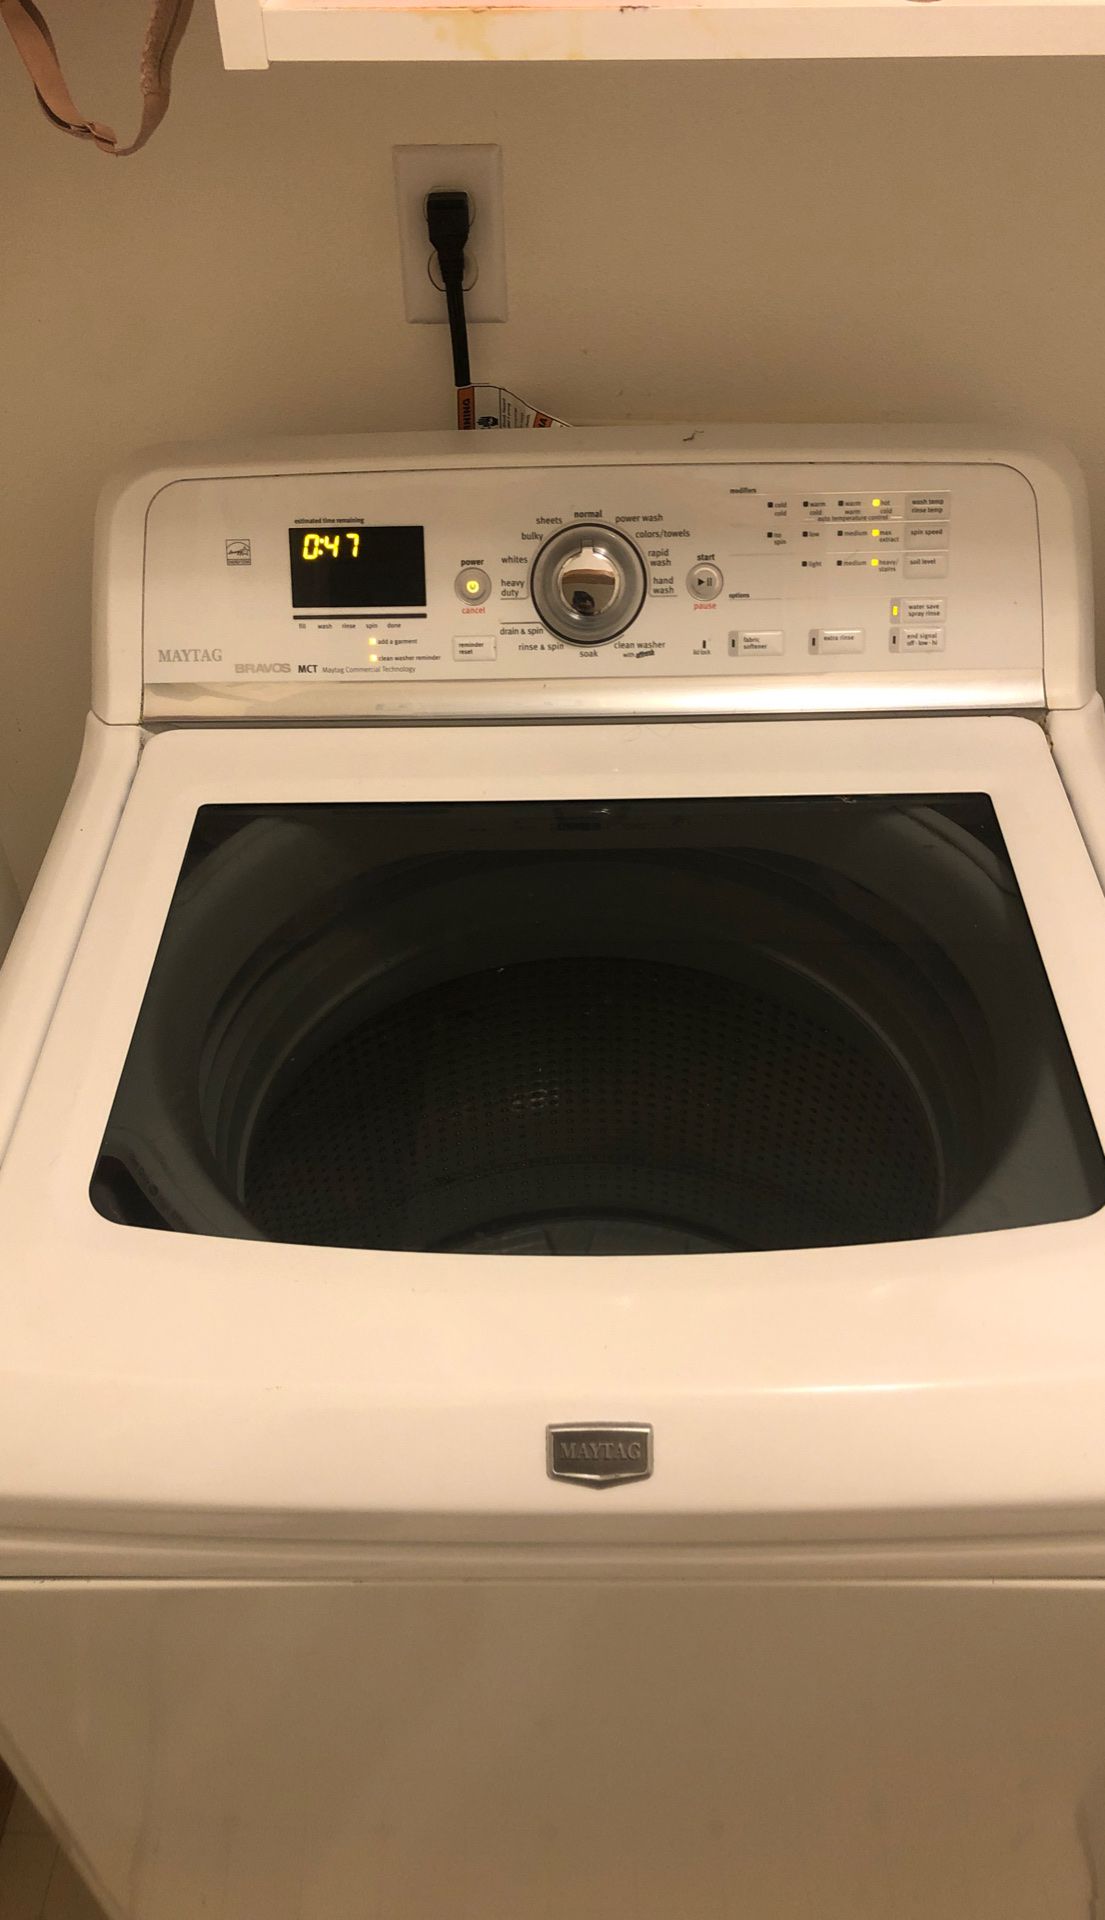 Washing machine Maytag bravos MCT